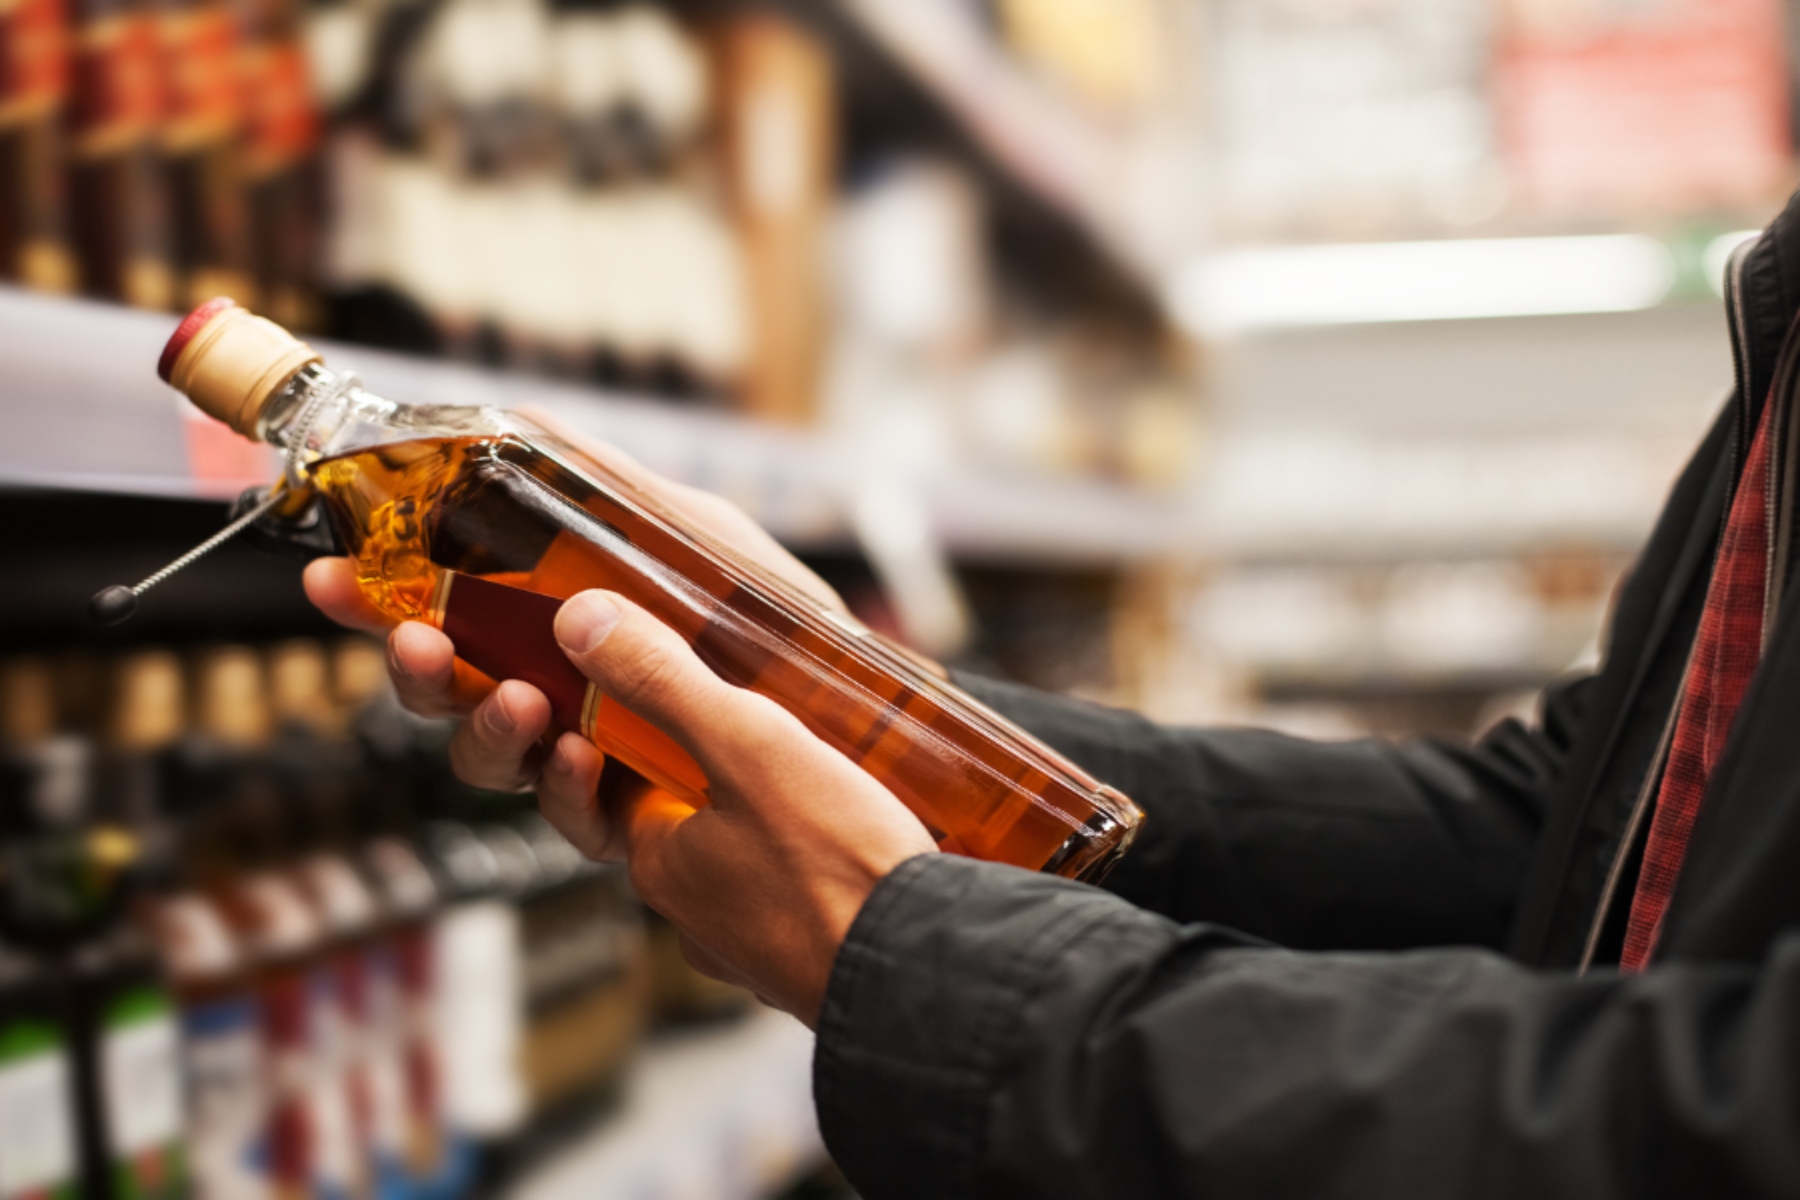 Ιρλανδία αλκοόλ: Θα αναγράφει στα αλκοολούχα ποτά προειδοποιήσεις υγείας